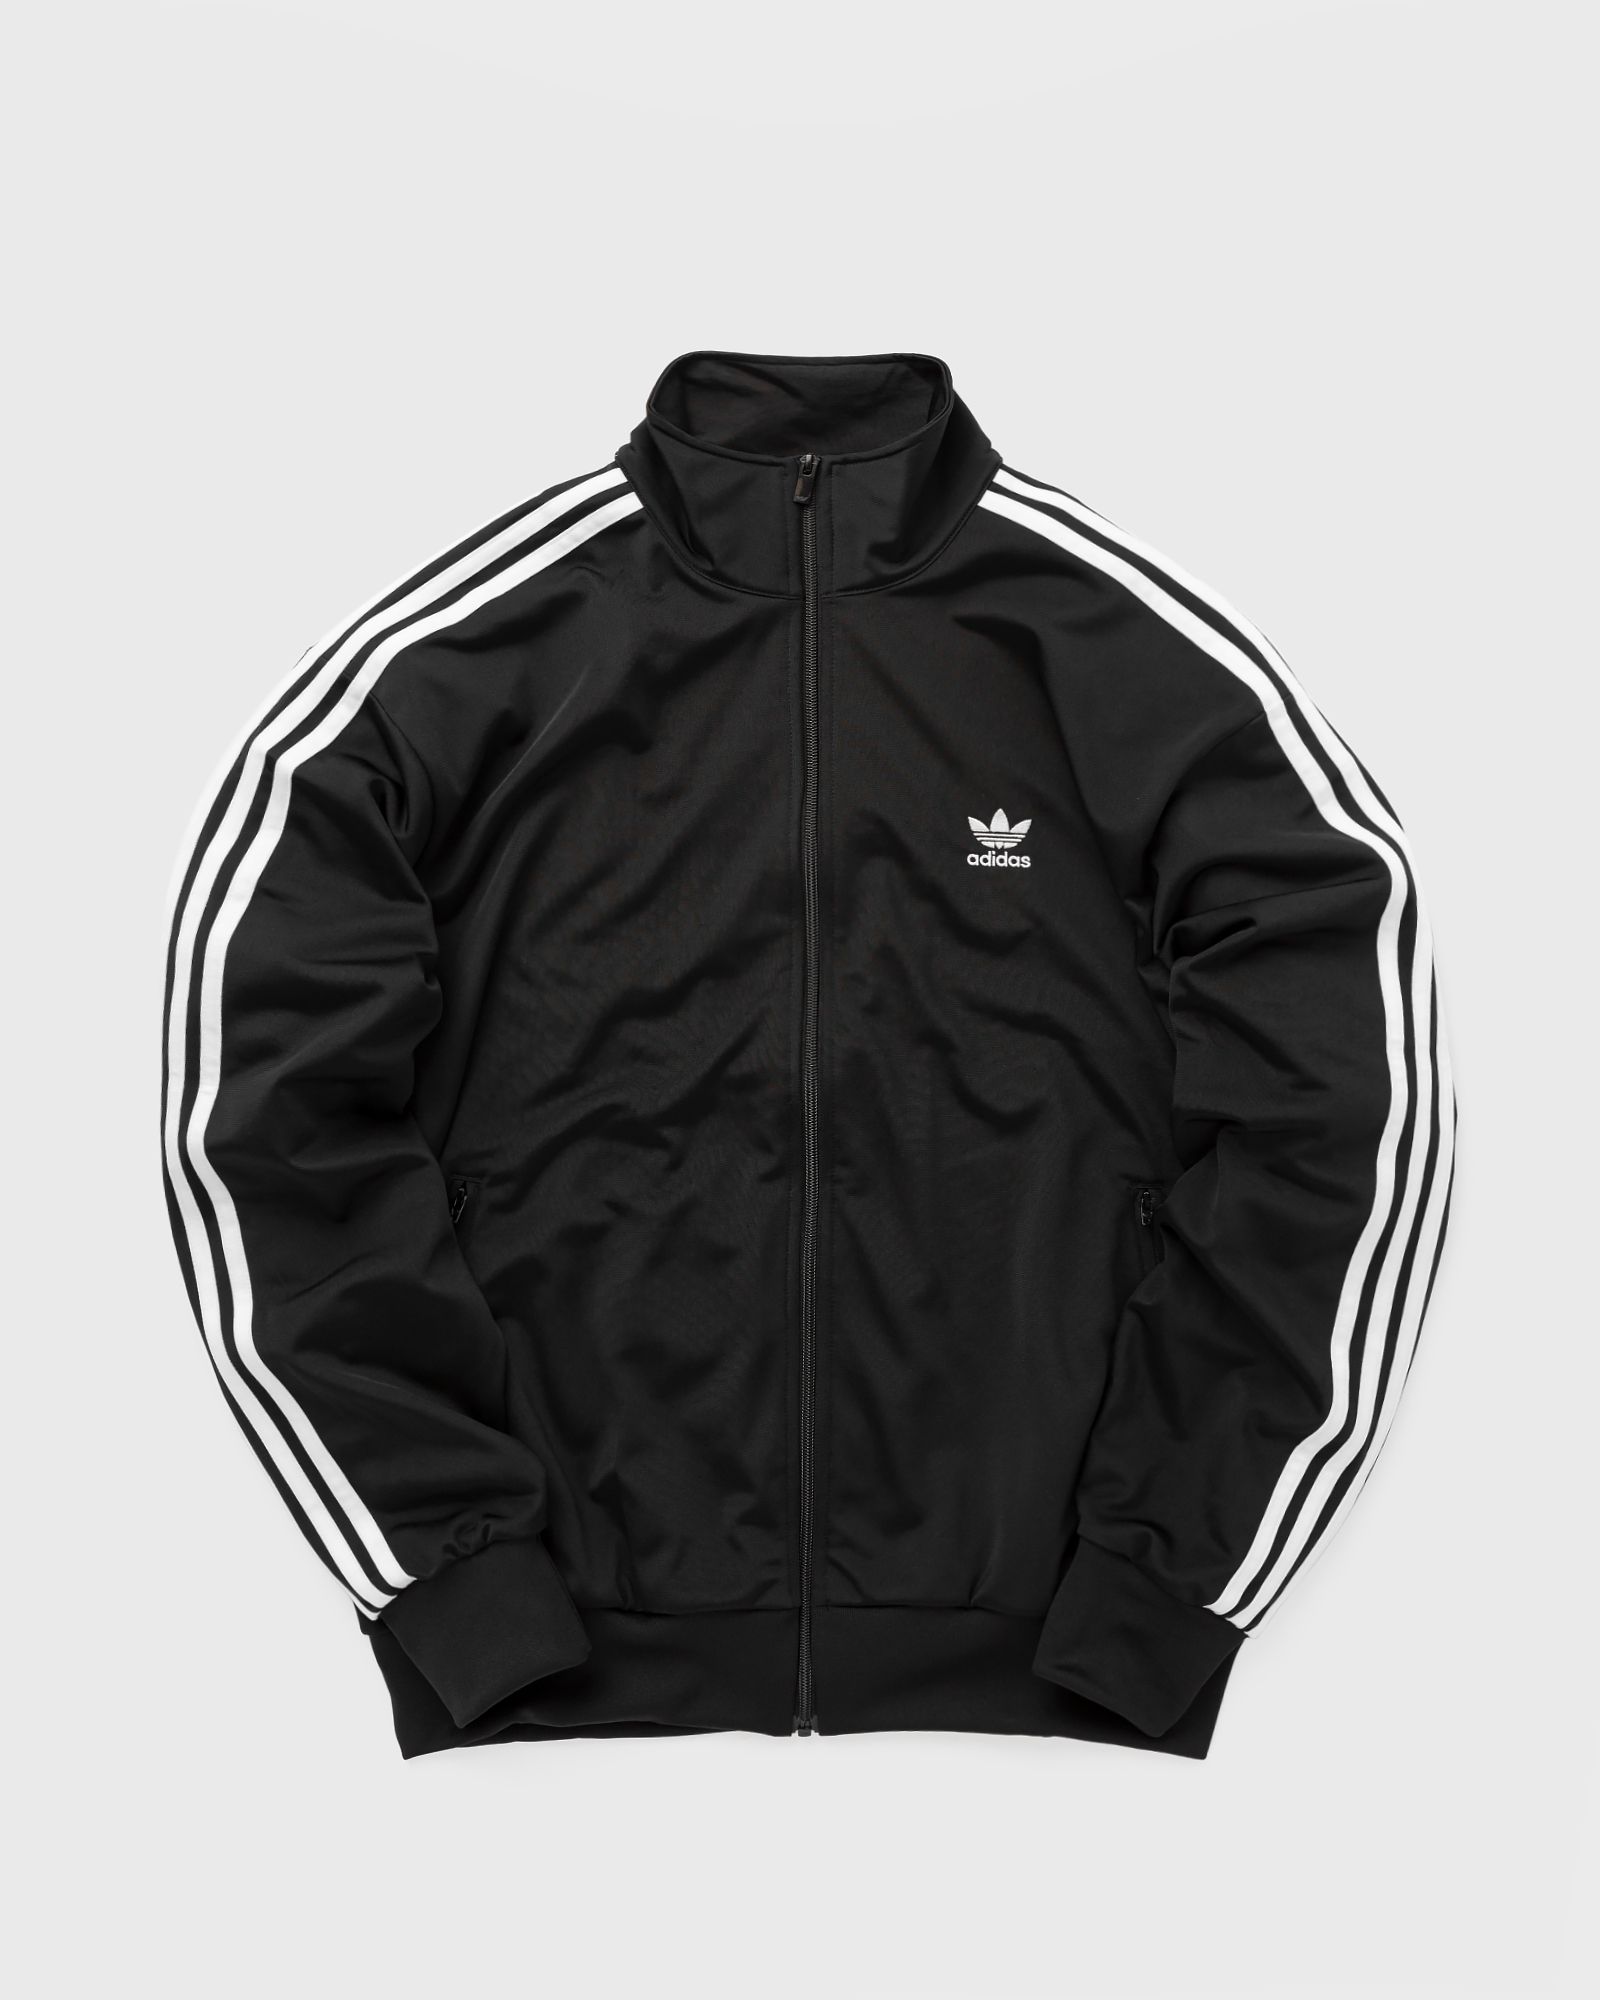 Adidas - firebird tt men track jackets black in größe:m